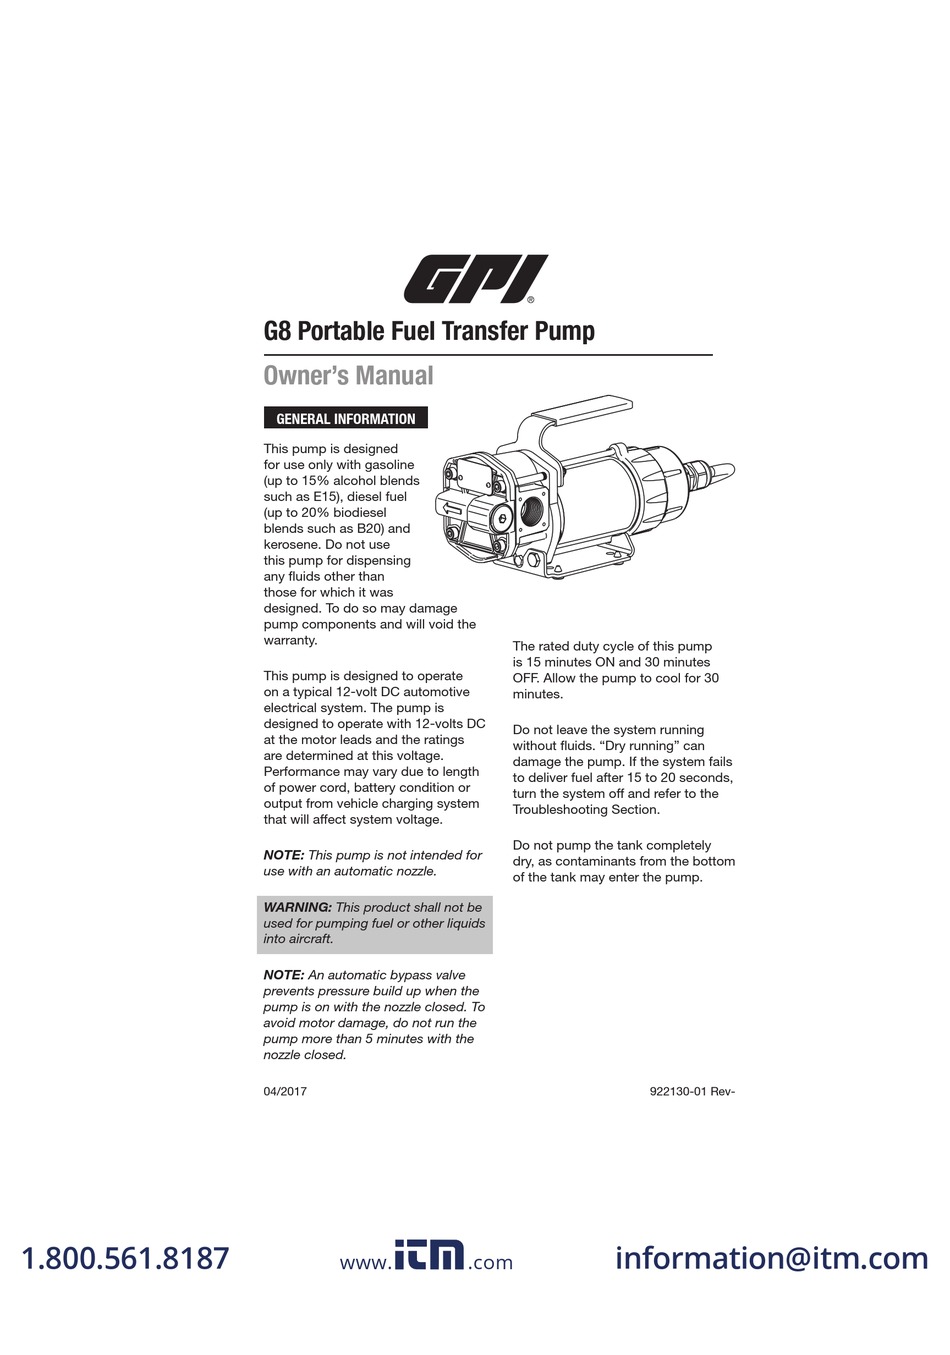 Manuel d'utilisation de la pompe de transfert de carburant portable GPI G8